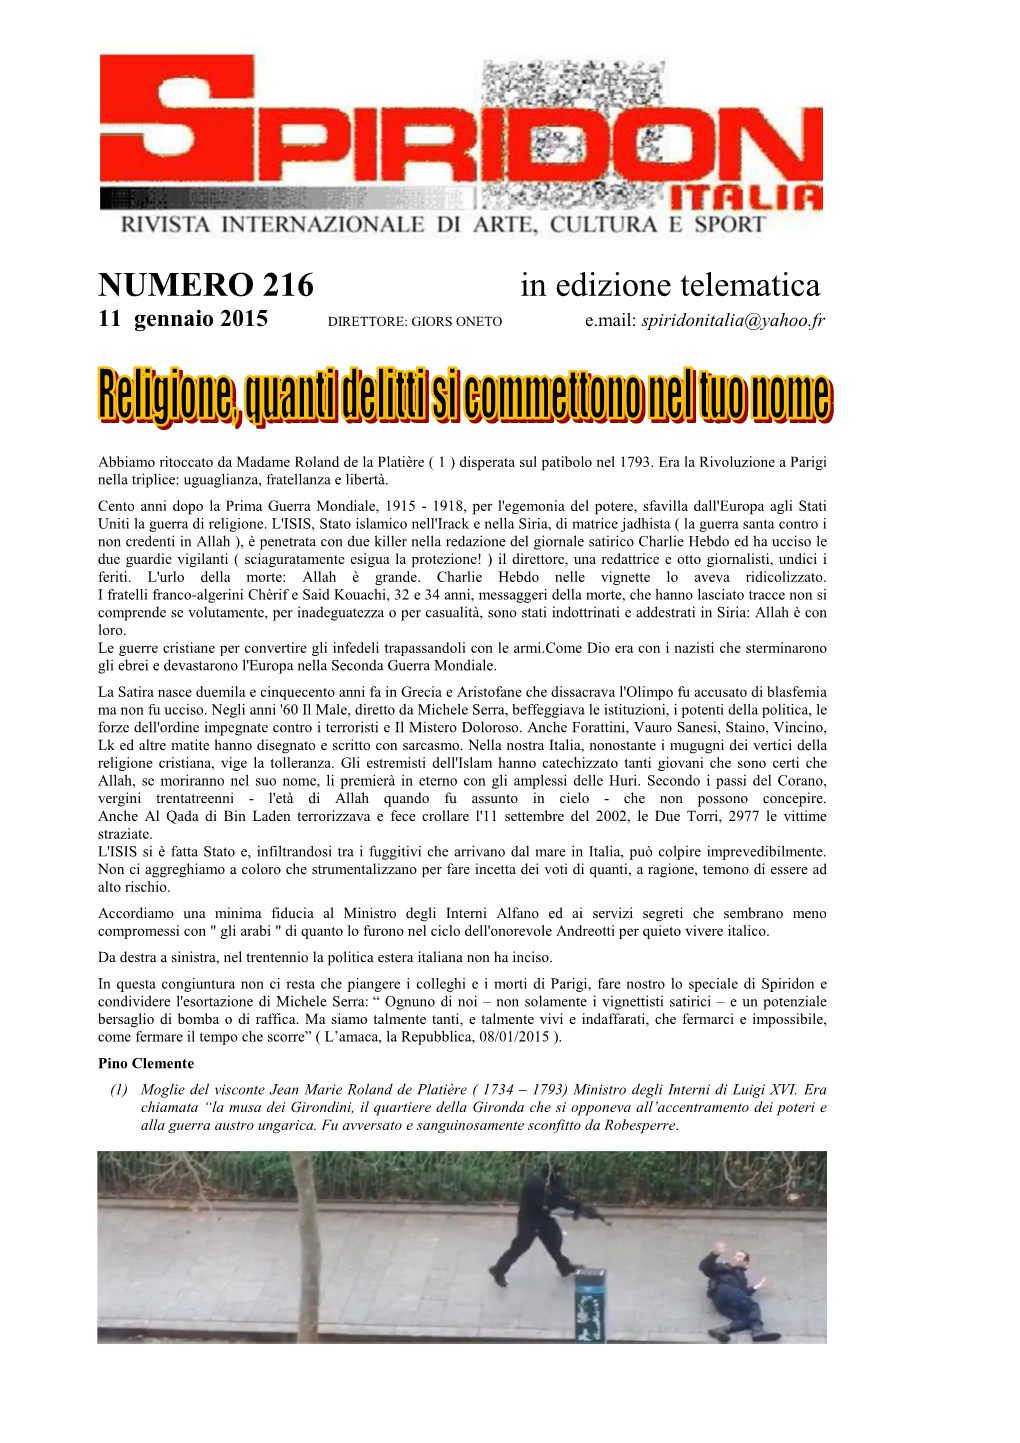 NUMERO 216 in Edizione Telematica 11 Gennaio 2015 DIRETTORE: GIORS ONETO E.Mail: Spiridonitalia@Yahoo.Fr